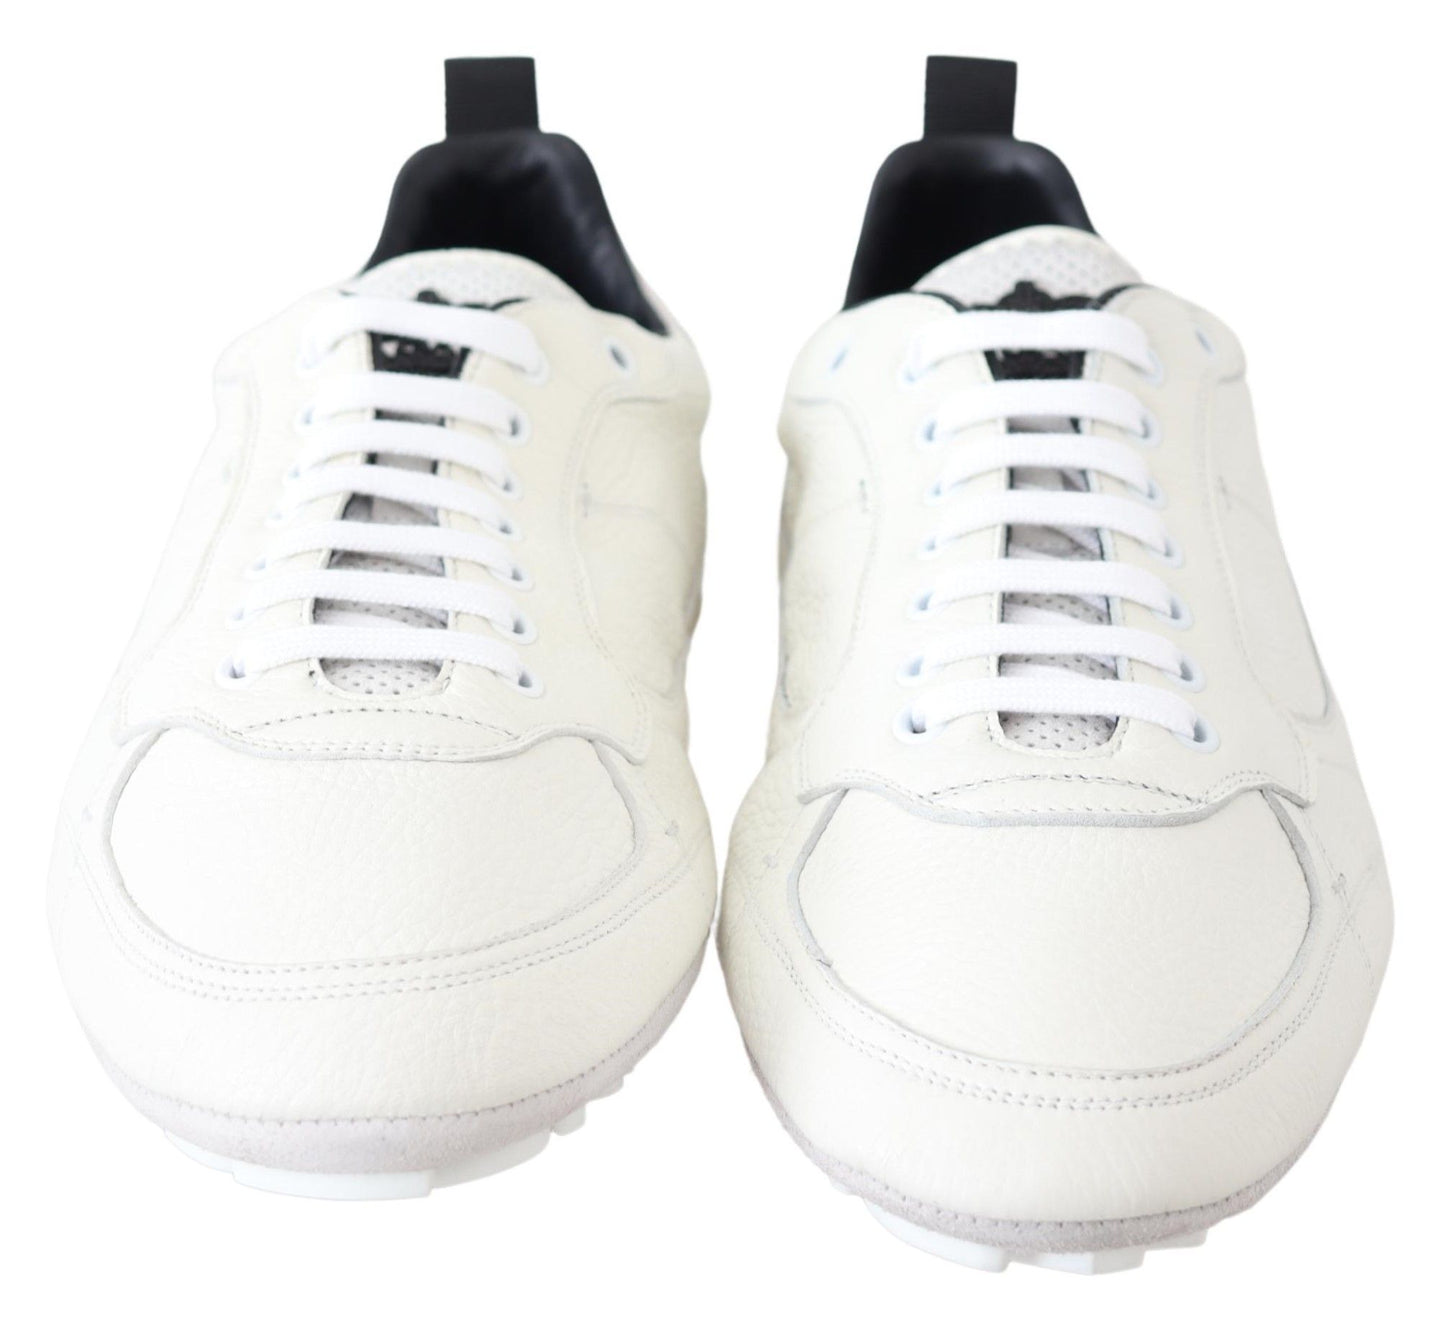 Elegant White Leather Sneakers for Men